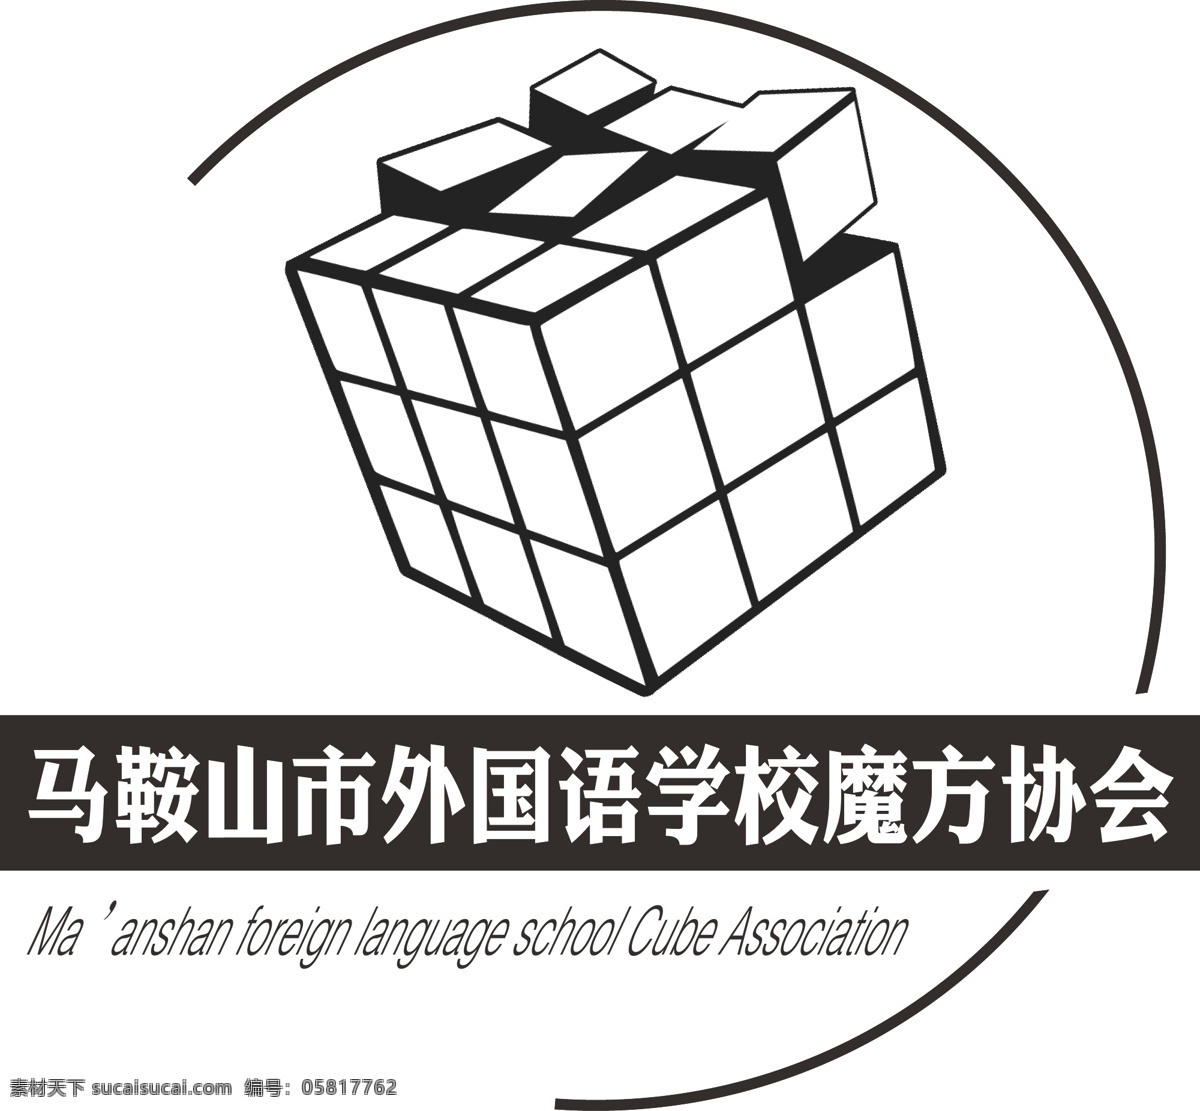 马鞍山市 外国语 学校 魔方 协会 logo 简约 黑白 广告